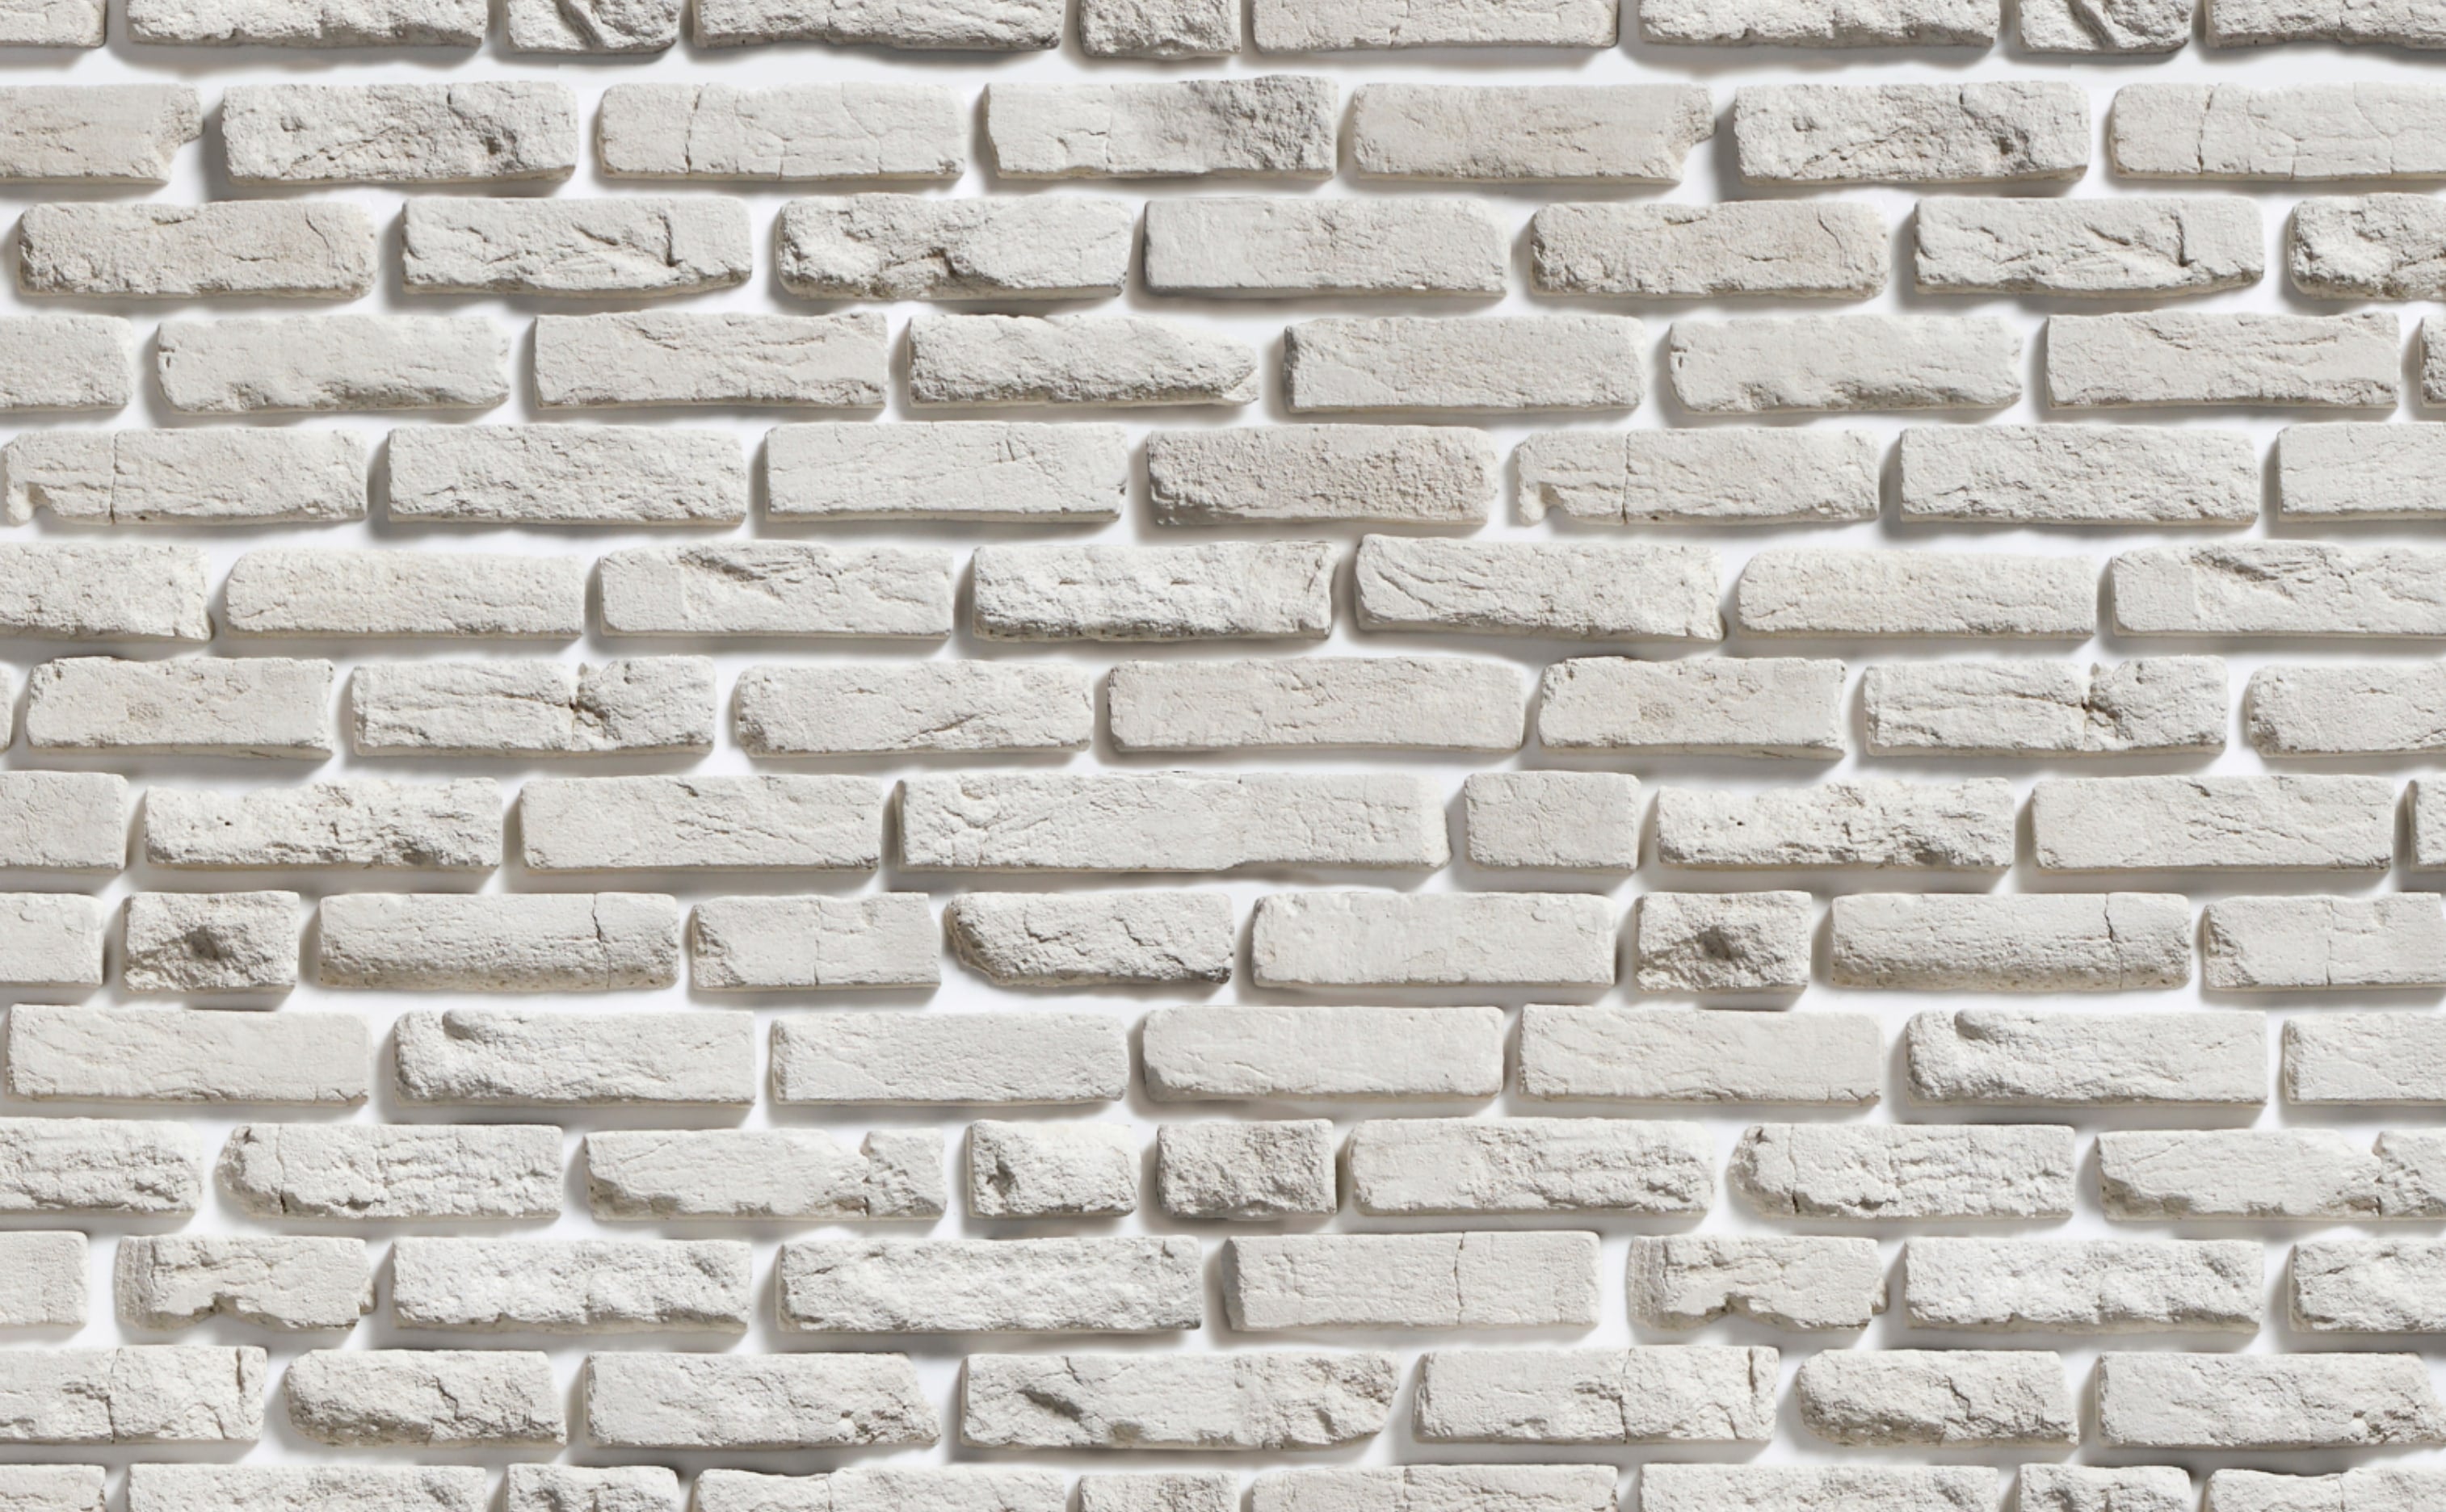 Brick Design Horizontal 3D Bricks Wallpaper Size 21 X 10 Mtr  57 Sqft